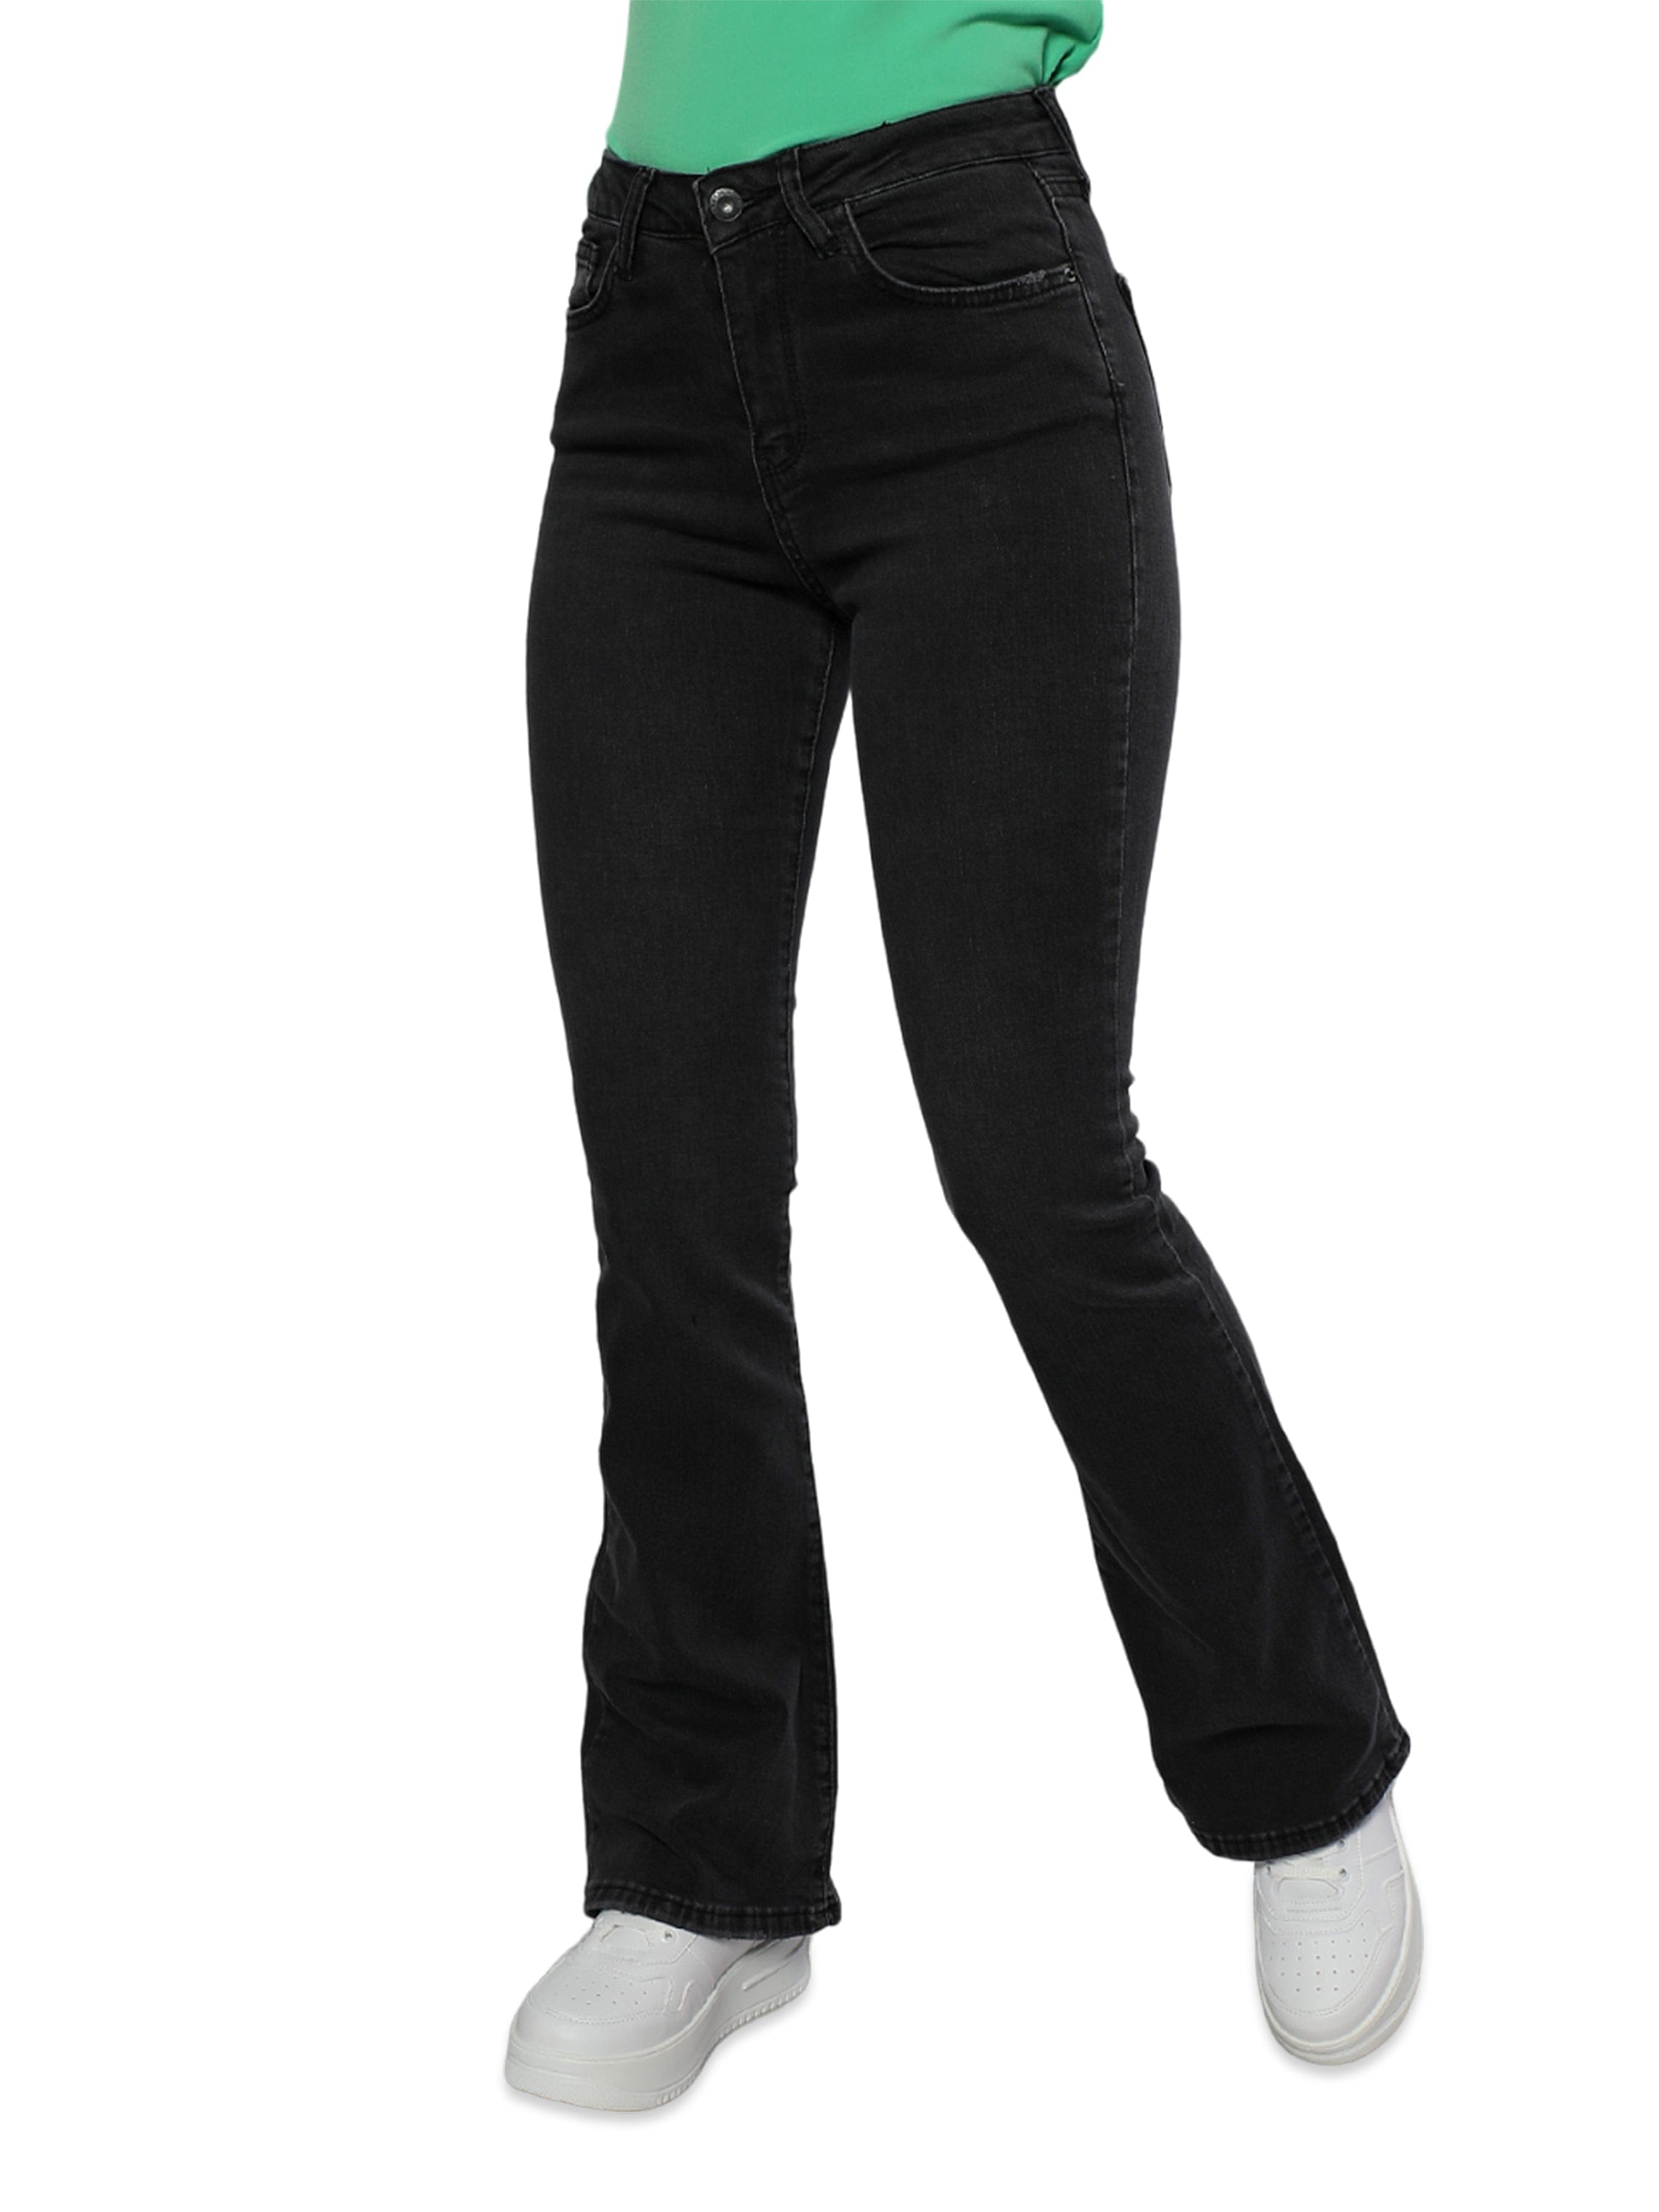 Women Black Denim Jeans With Wide Legs